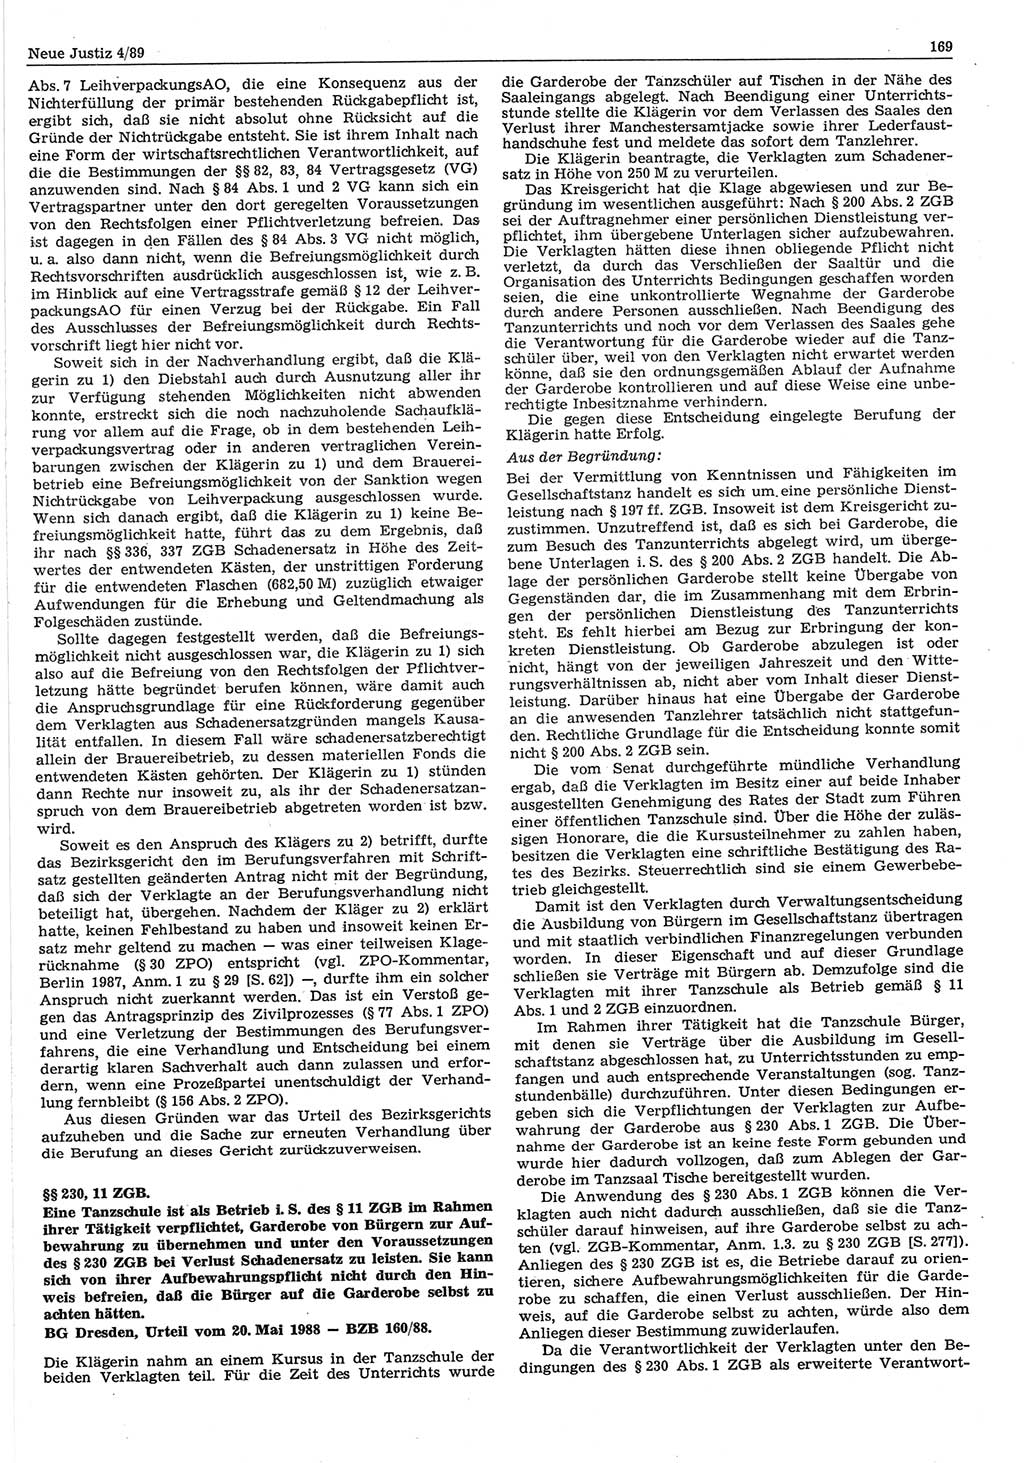 Neue Justiz (NJ), Zeitschrift für sozialistisches Recht und Gesetzlichkeit [Deutsche Demokratische Republik (DDR)], 43. Jahrgang 1989, Seite 169 (NJ DDR 1989, S. 169)